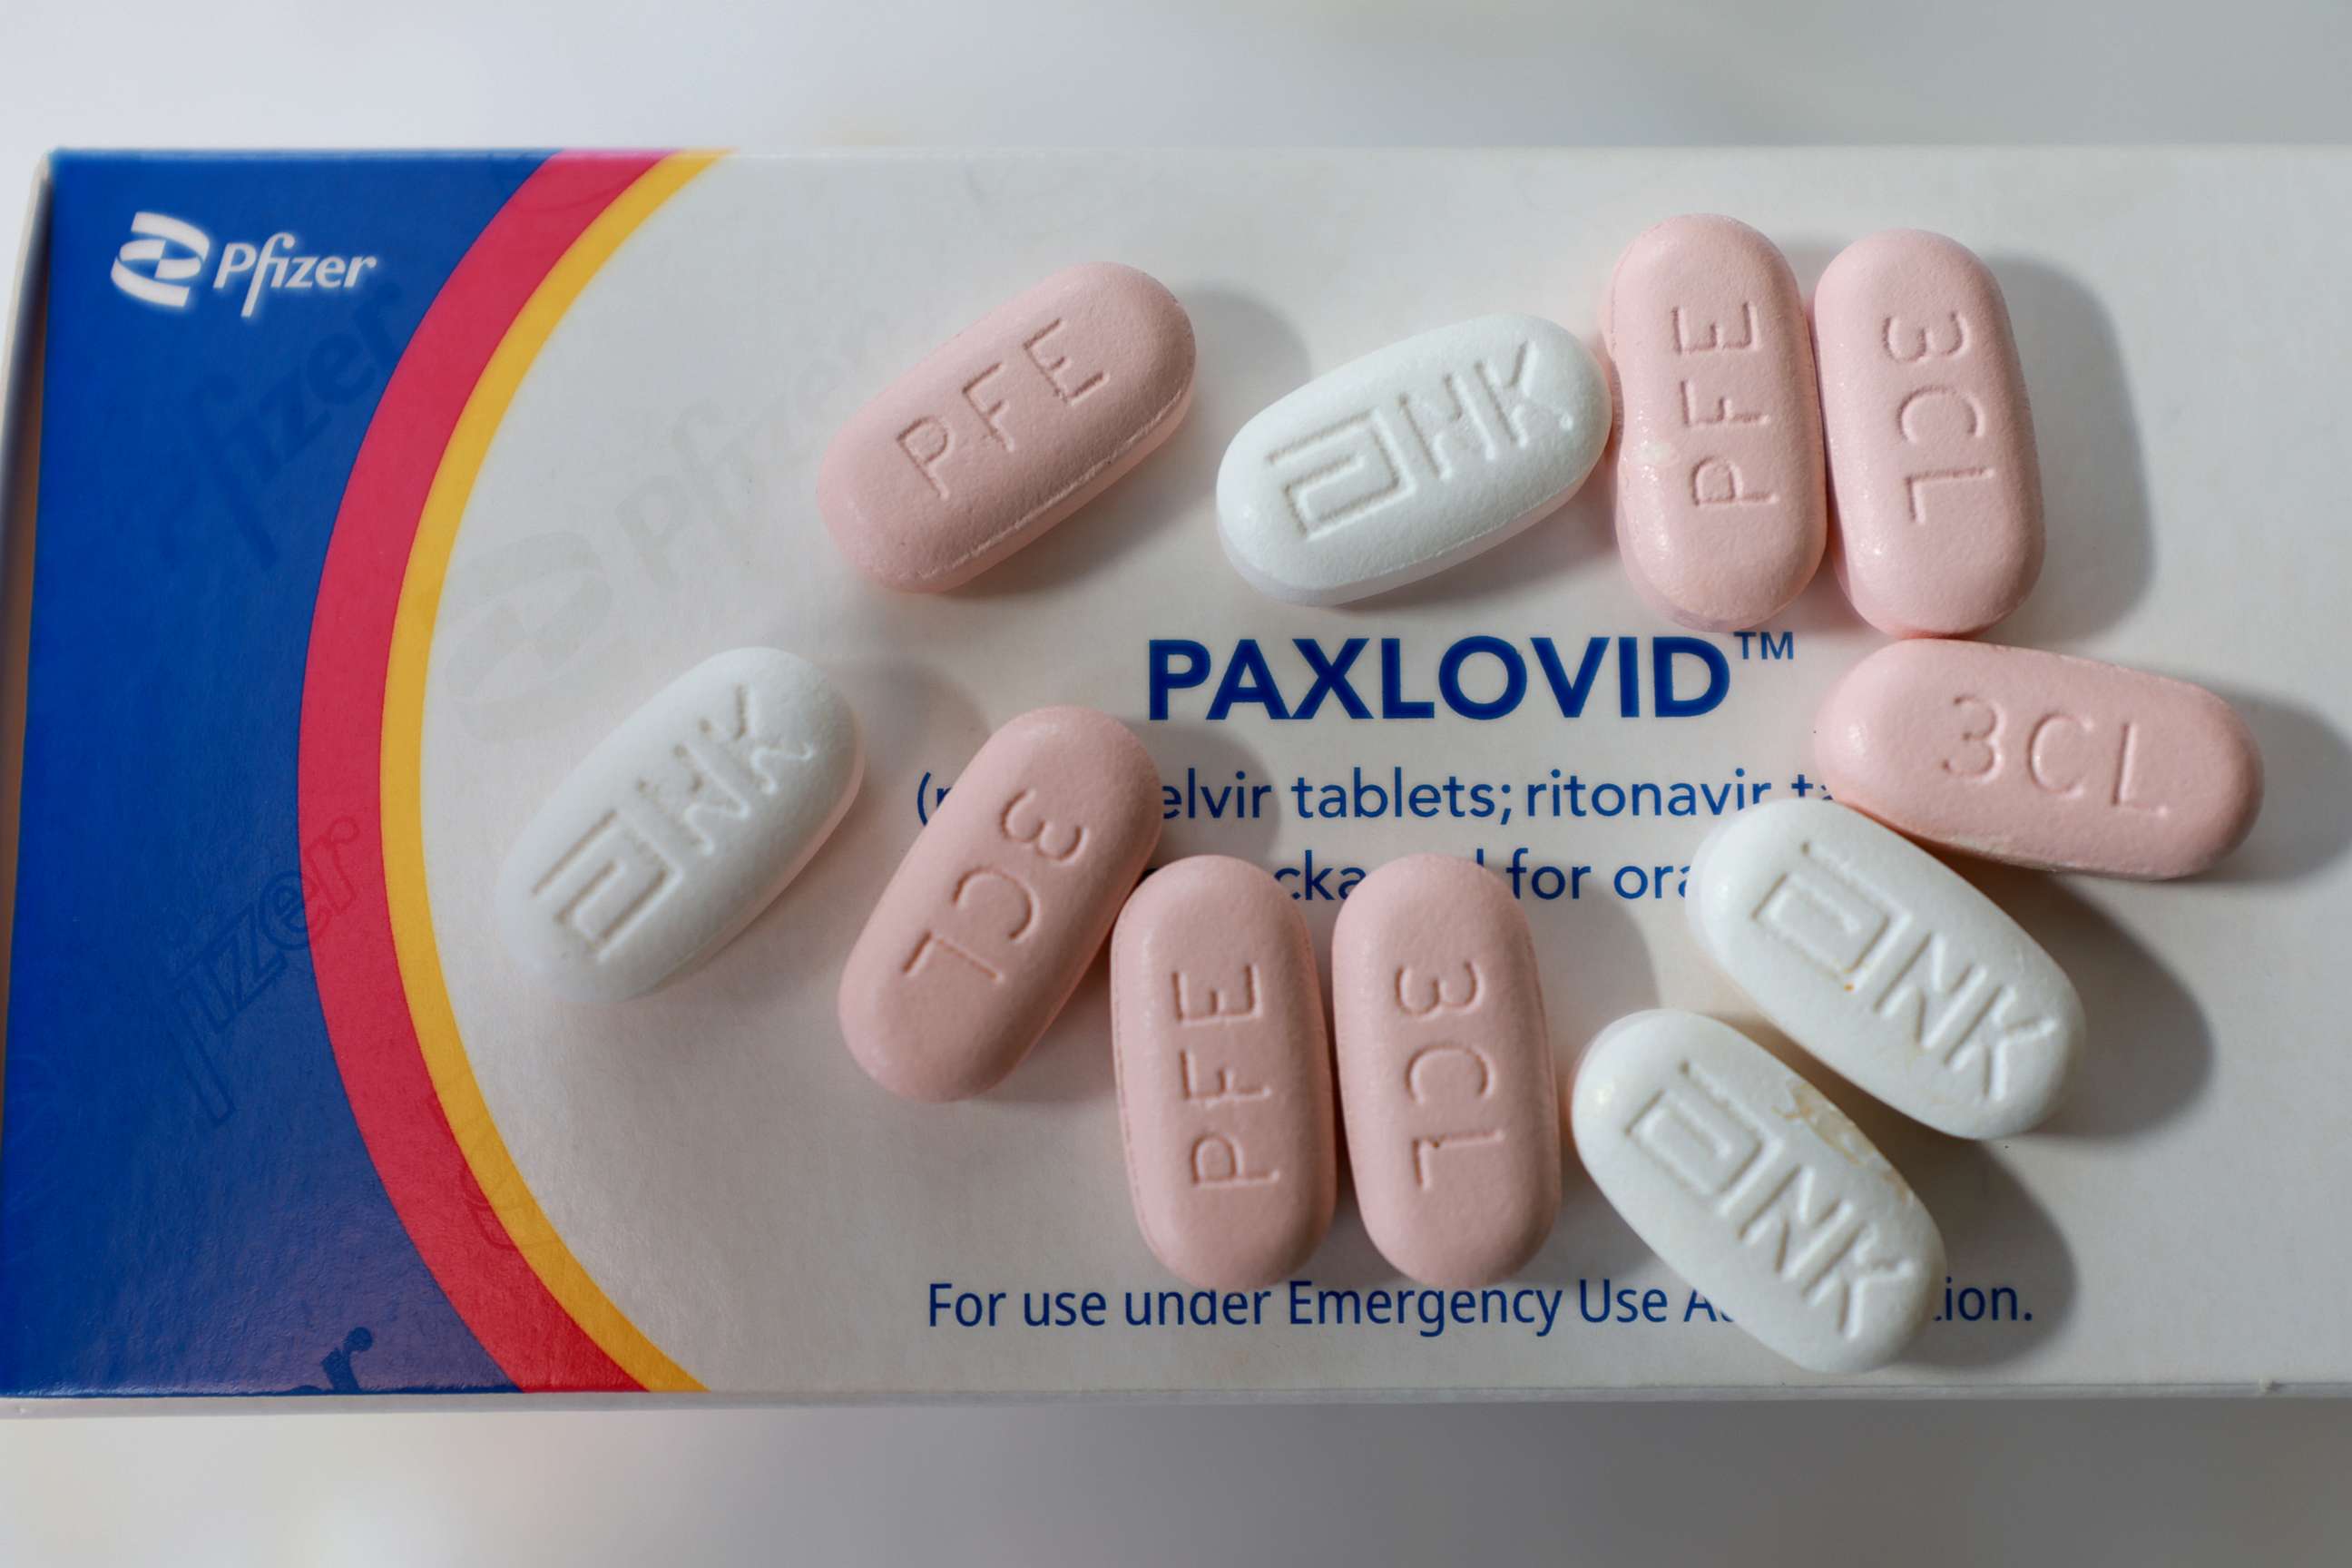 PHOTO: Pfizer's Paxlovid